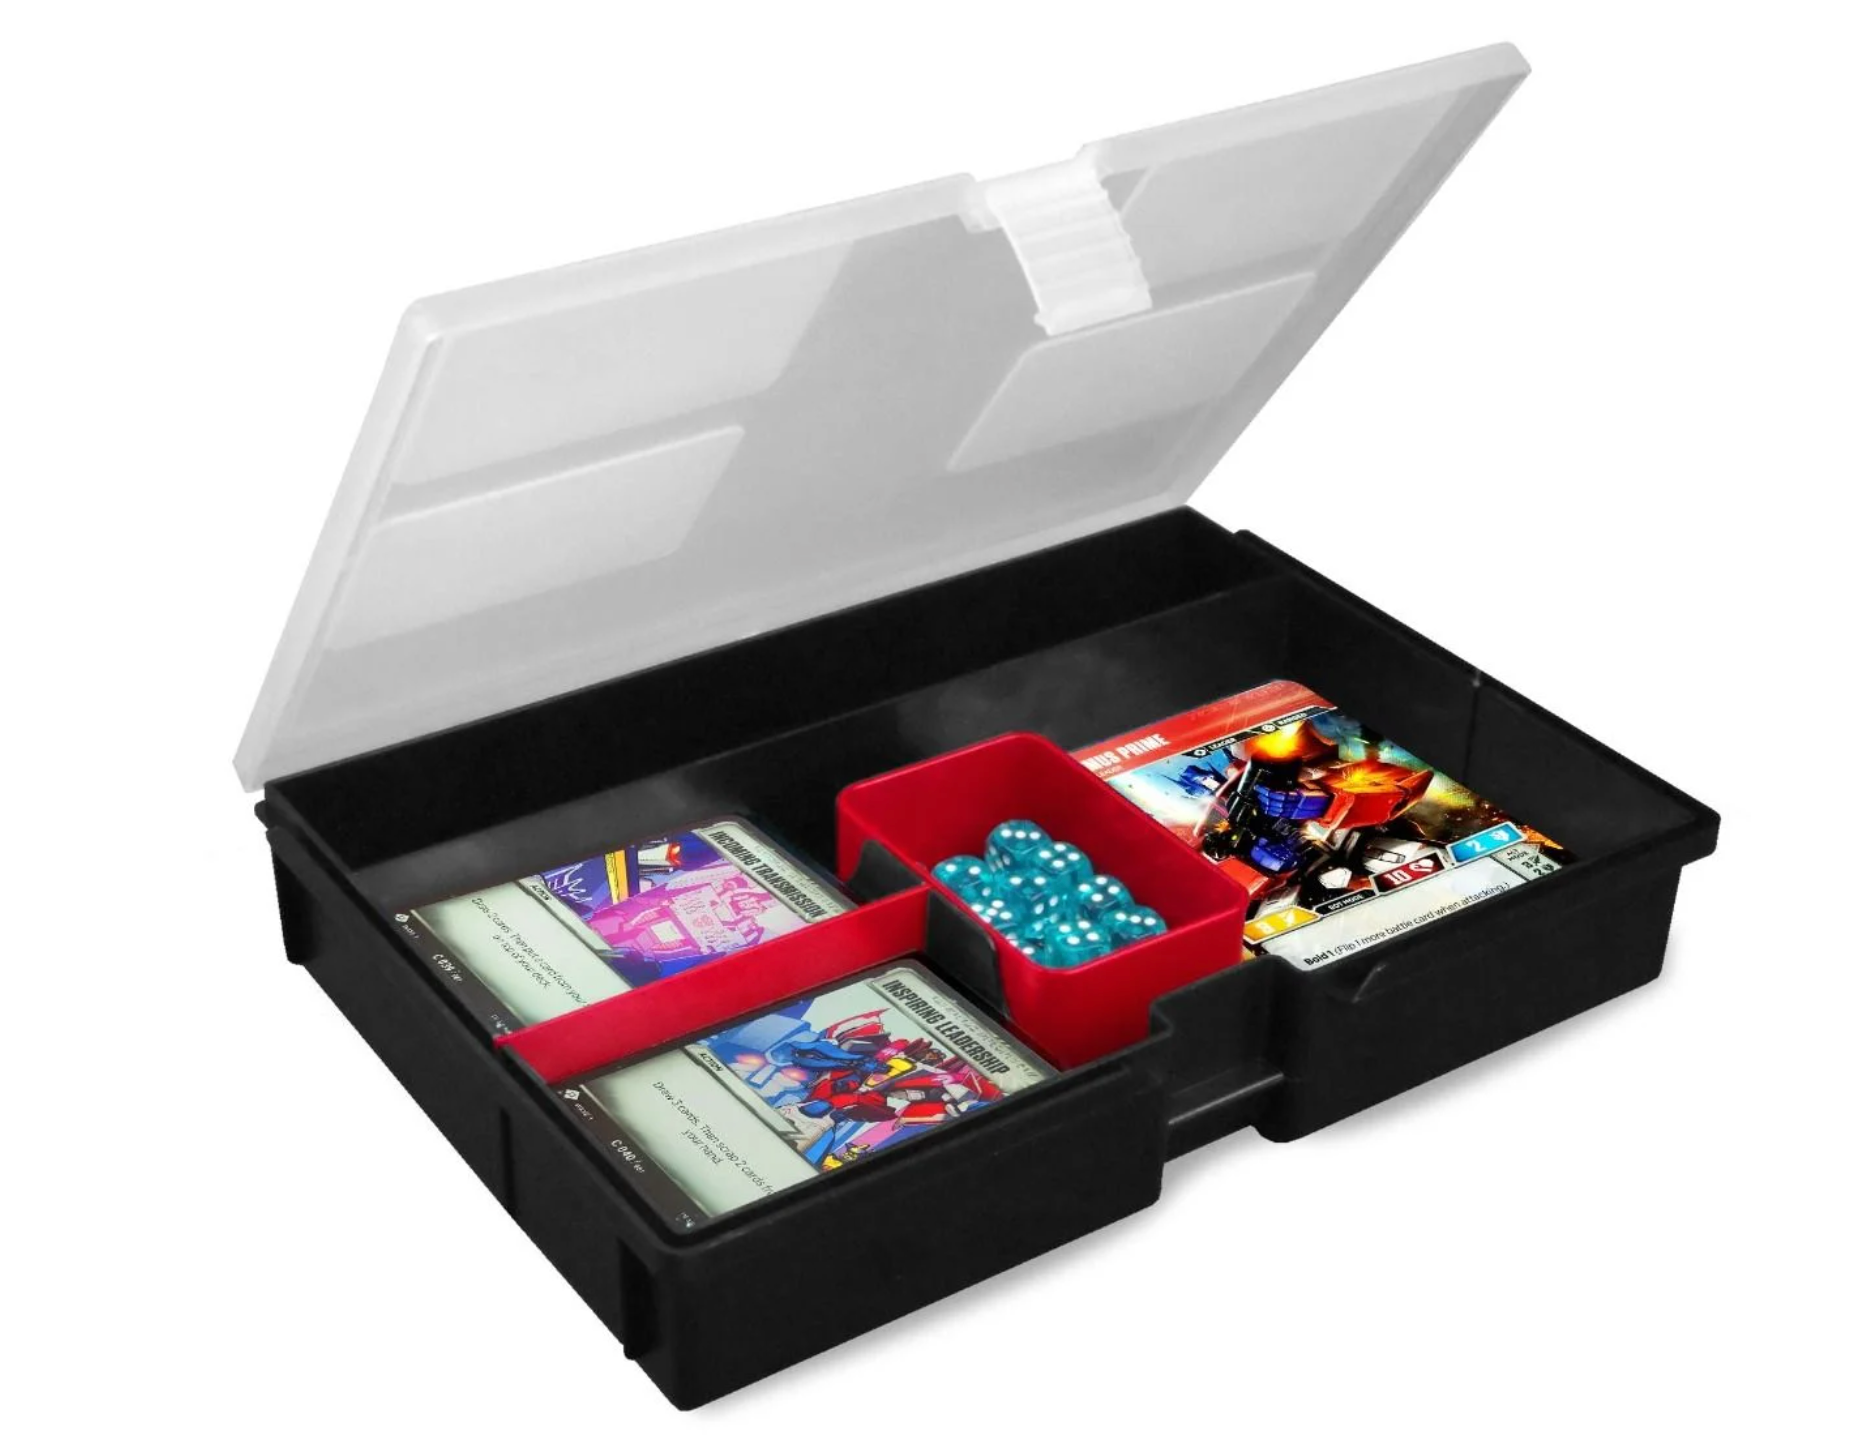 Prime X4 Gaming Box - Black